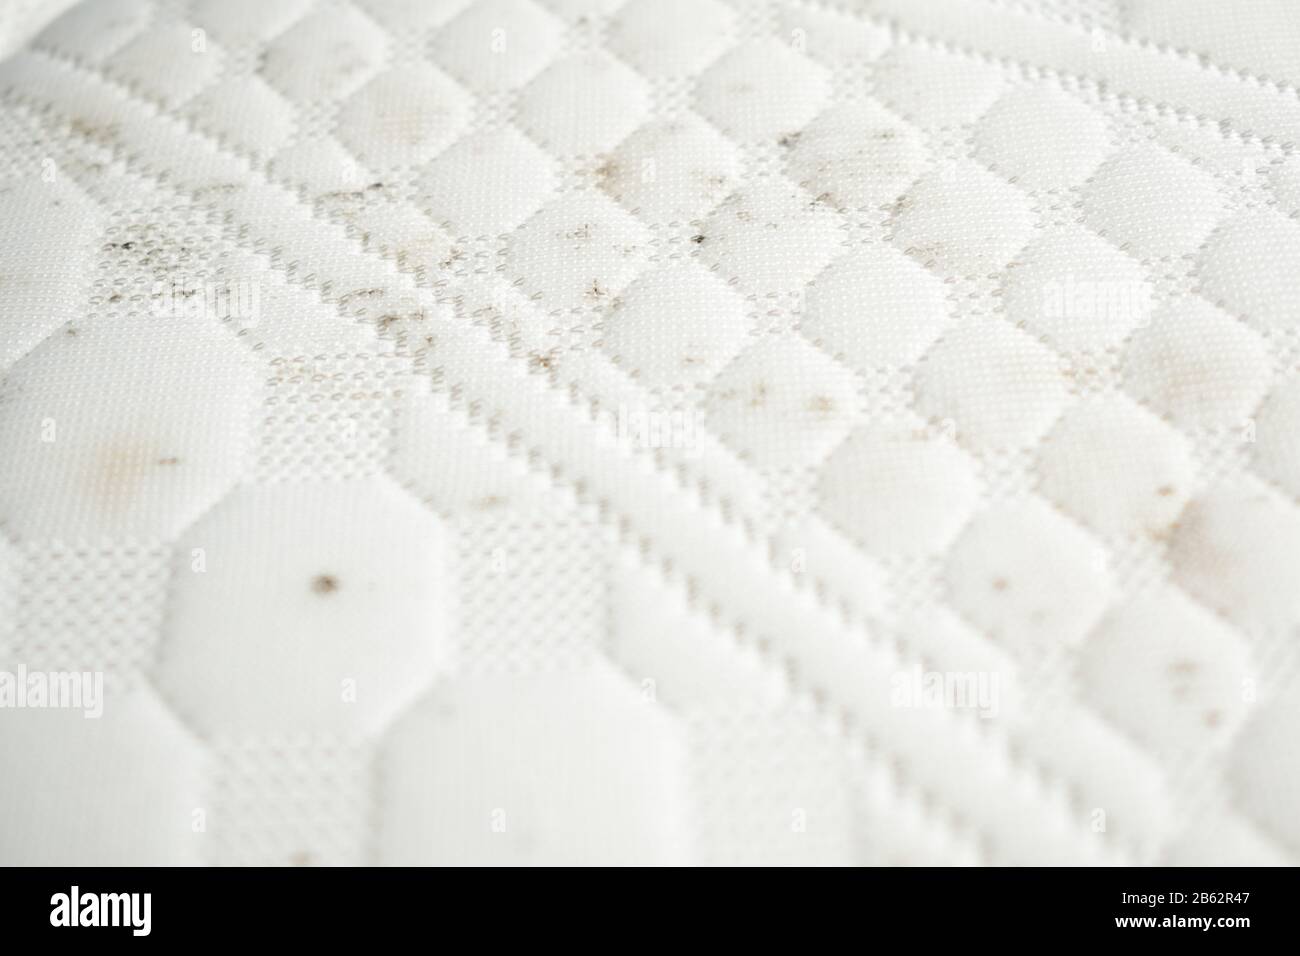 Moisissure sur un matelas. Taches de moisi sur un tissu blanc Photo Stock -  Alamy